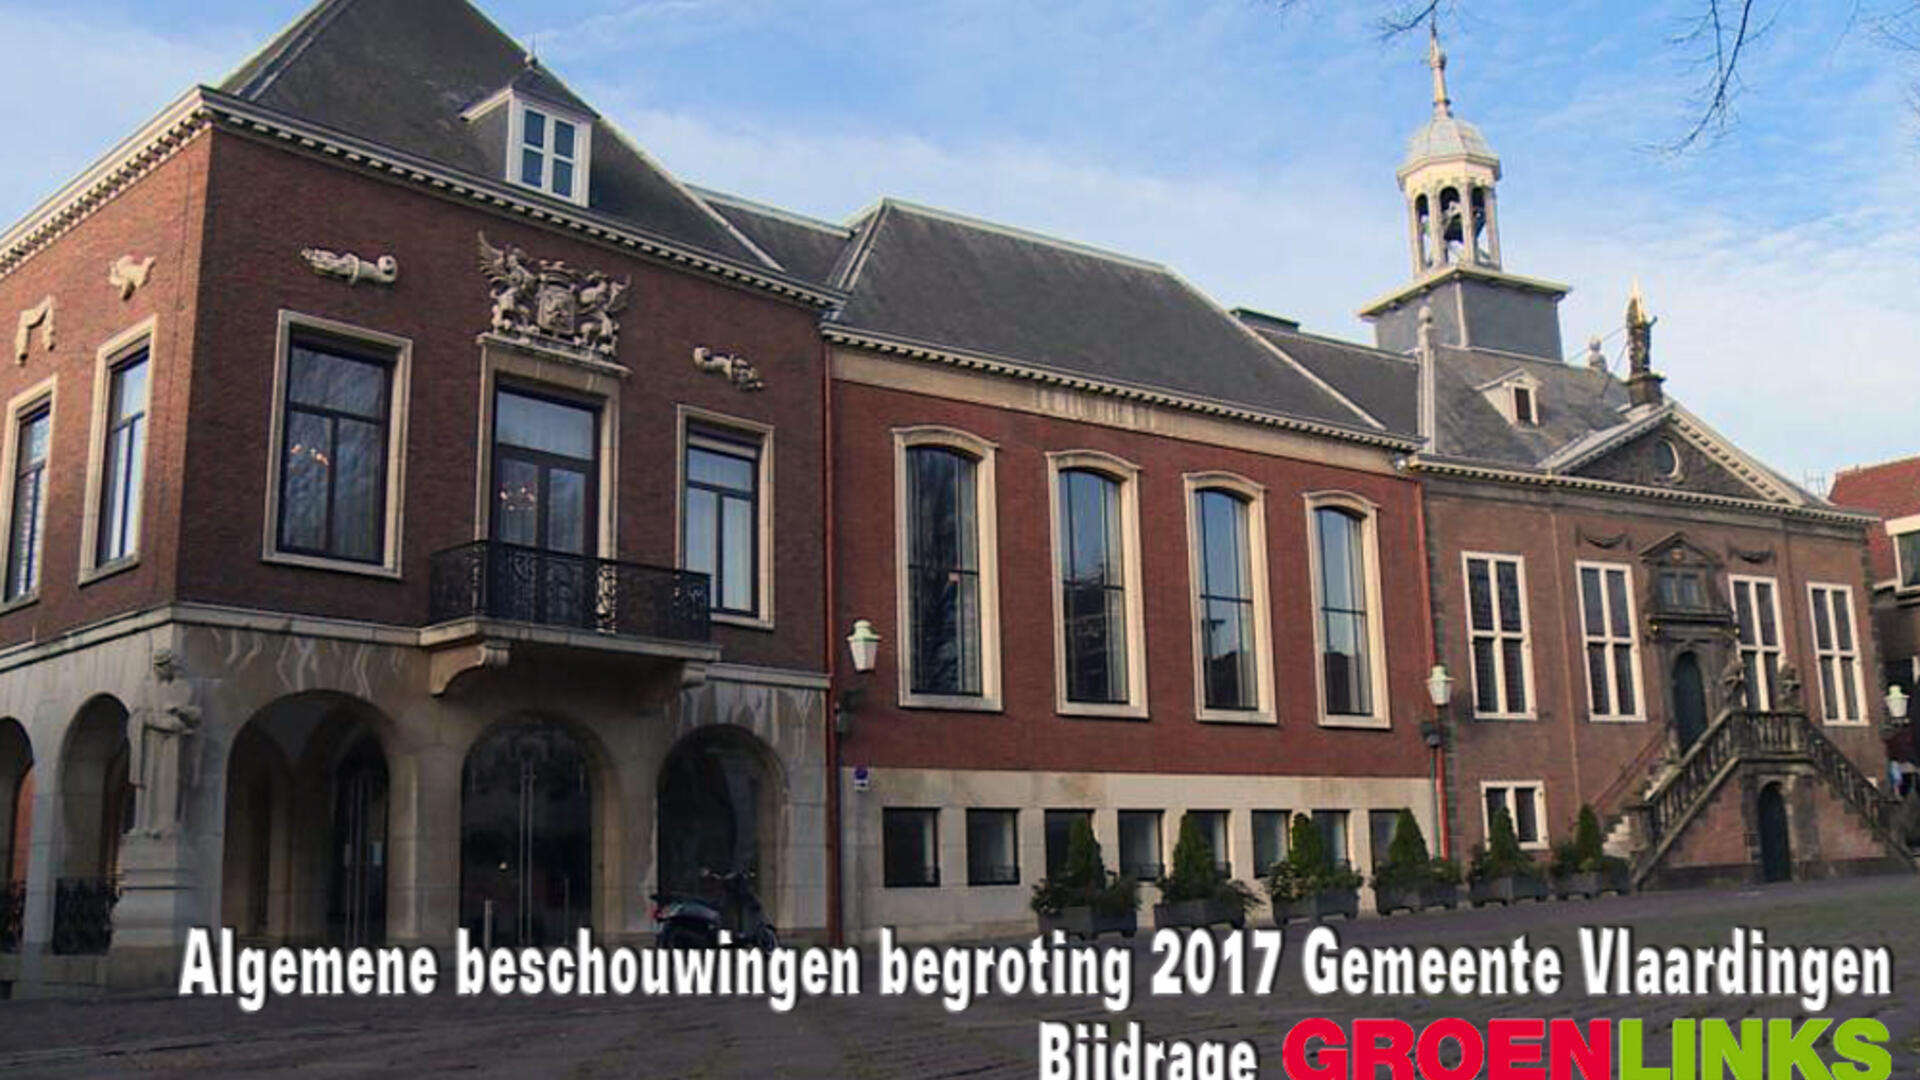 Bijdrage GroenLinks Vlaardingen aan algemene beschouwingen begroting 2017 - 9 en 10 november 2016